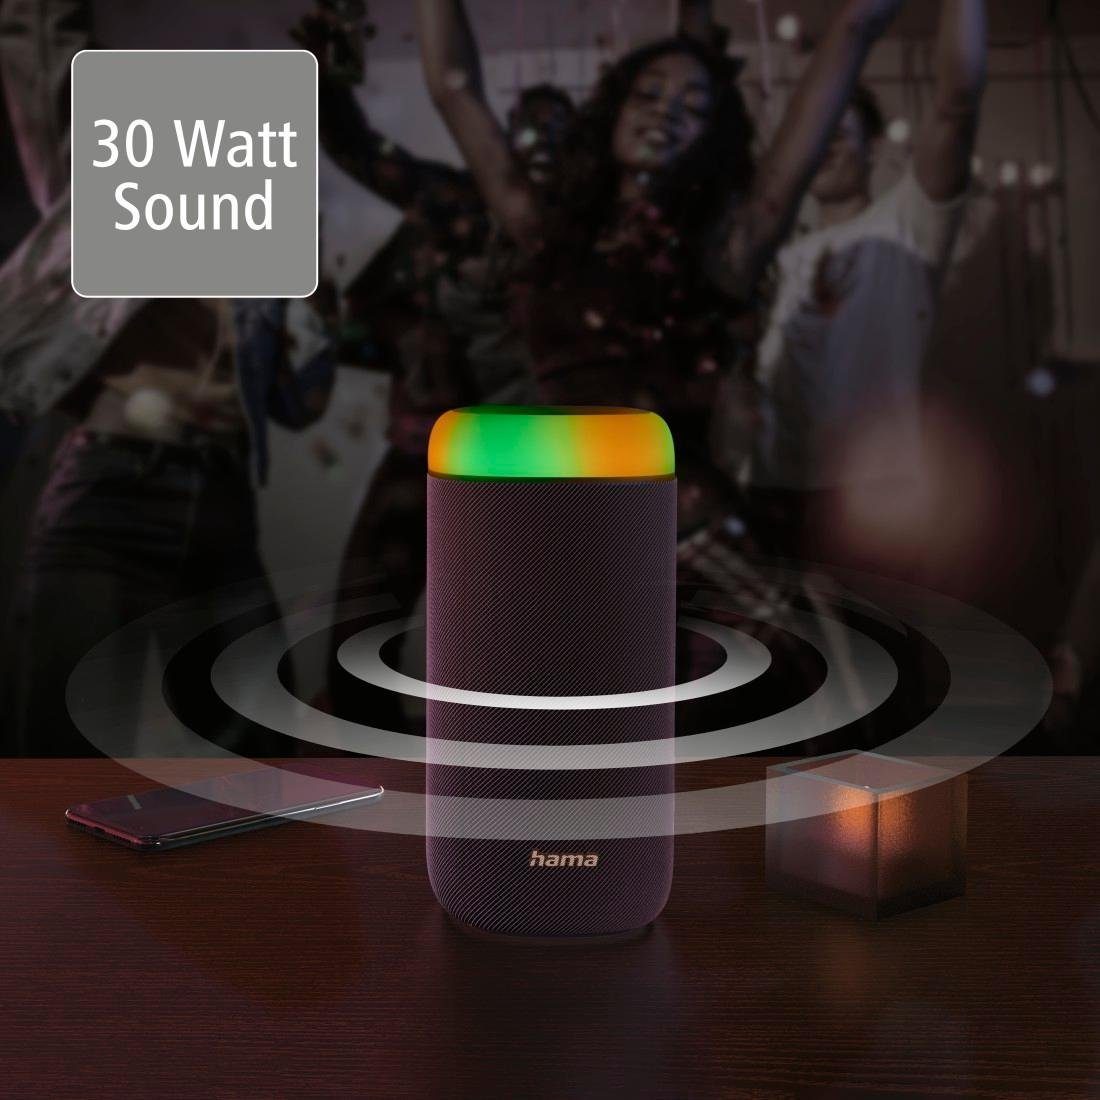 Bass Bass,360ᵒ 360ᵒ spritzwassergeschützt LED Hama Sound) Bluetooth schwarz Sound Xtra Box (Freisprechanlage,Xtra Bluetooth-Lautsprecher 2.0 Shine